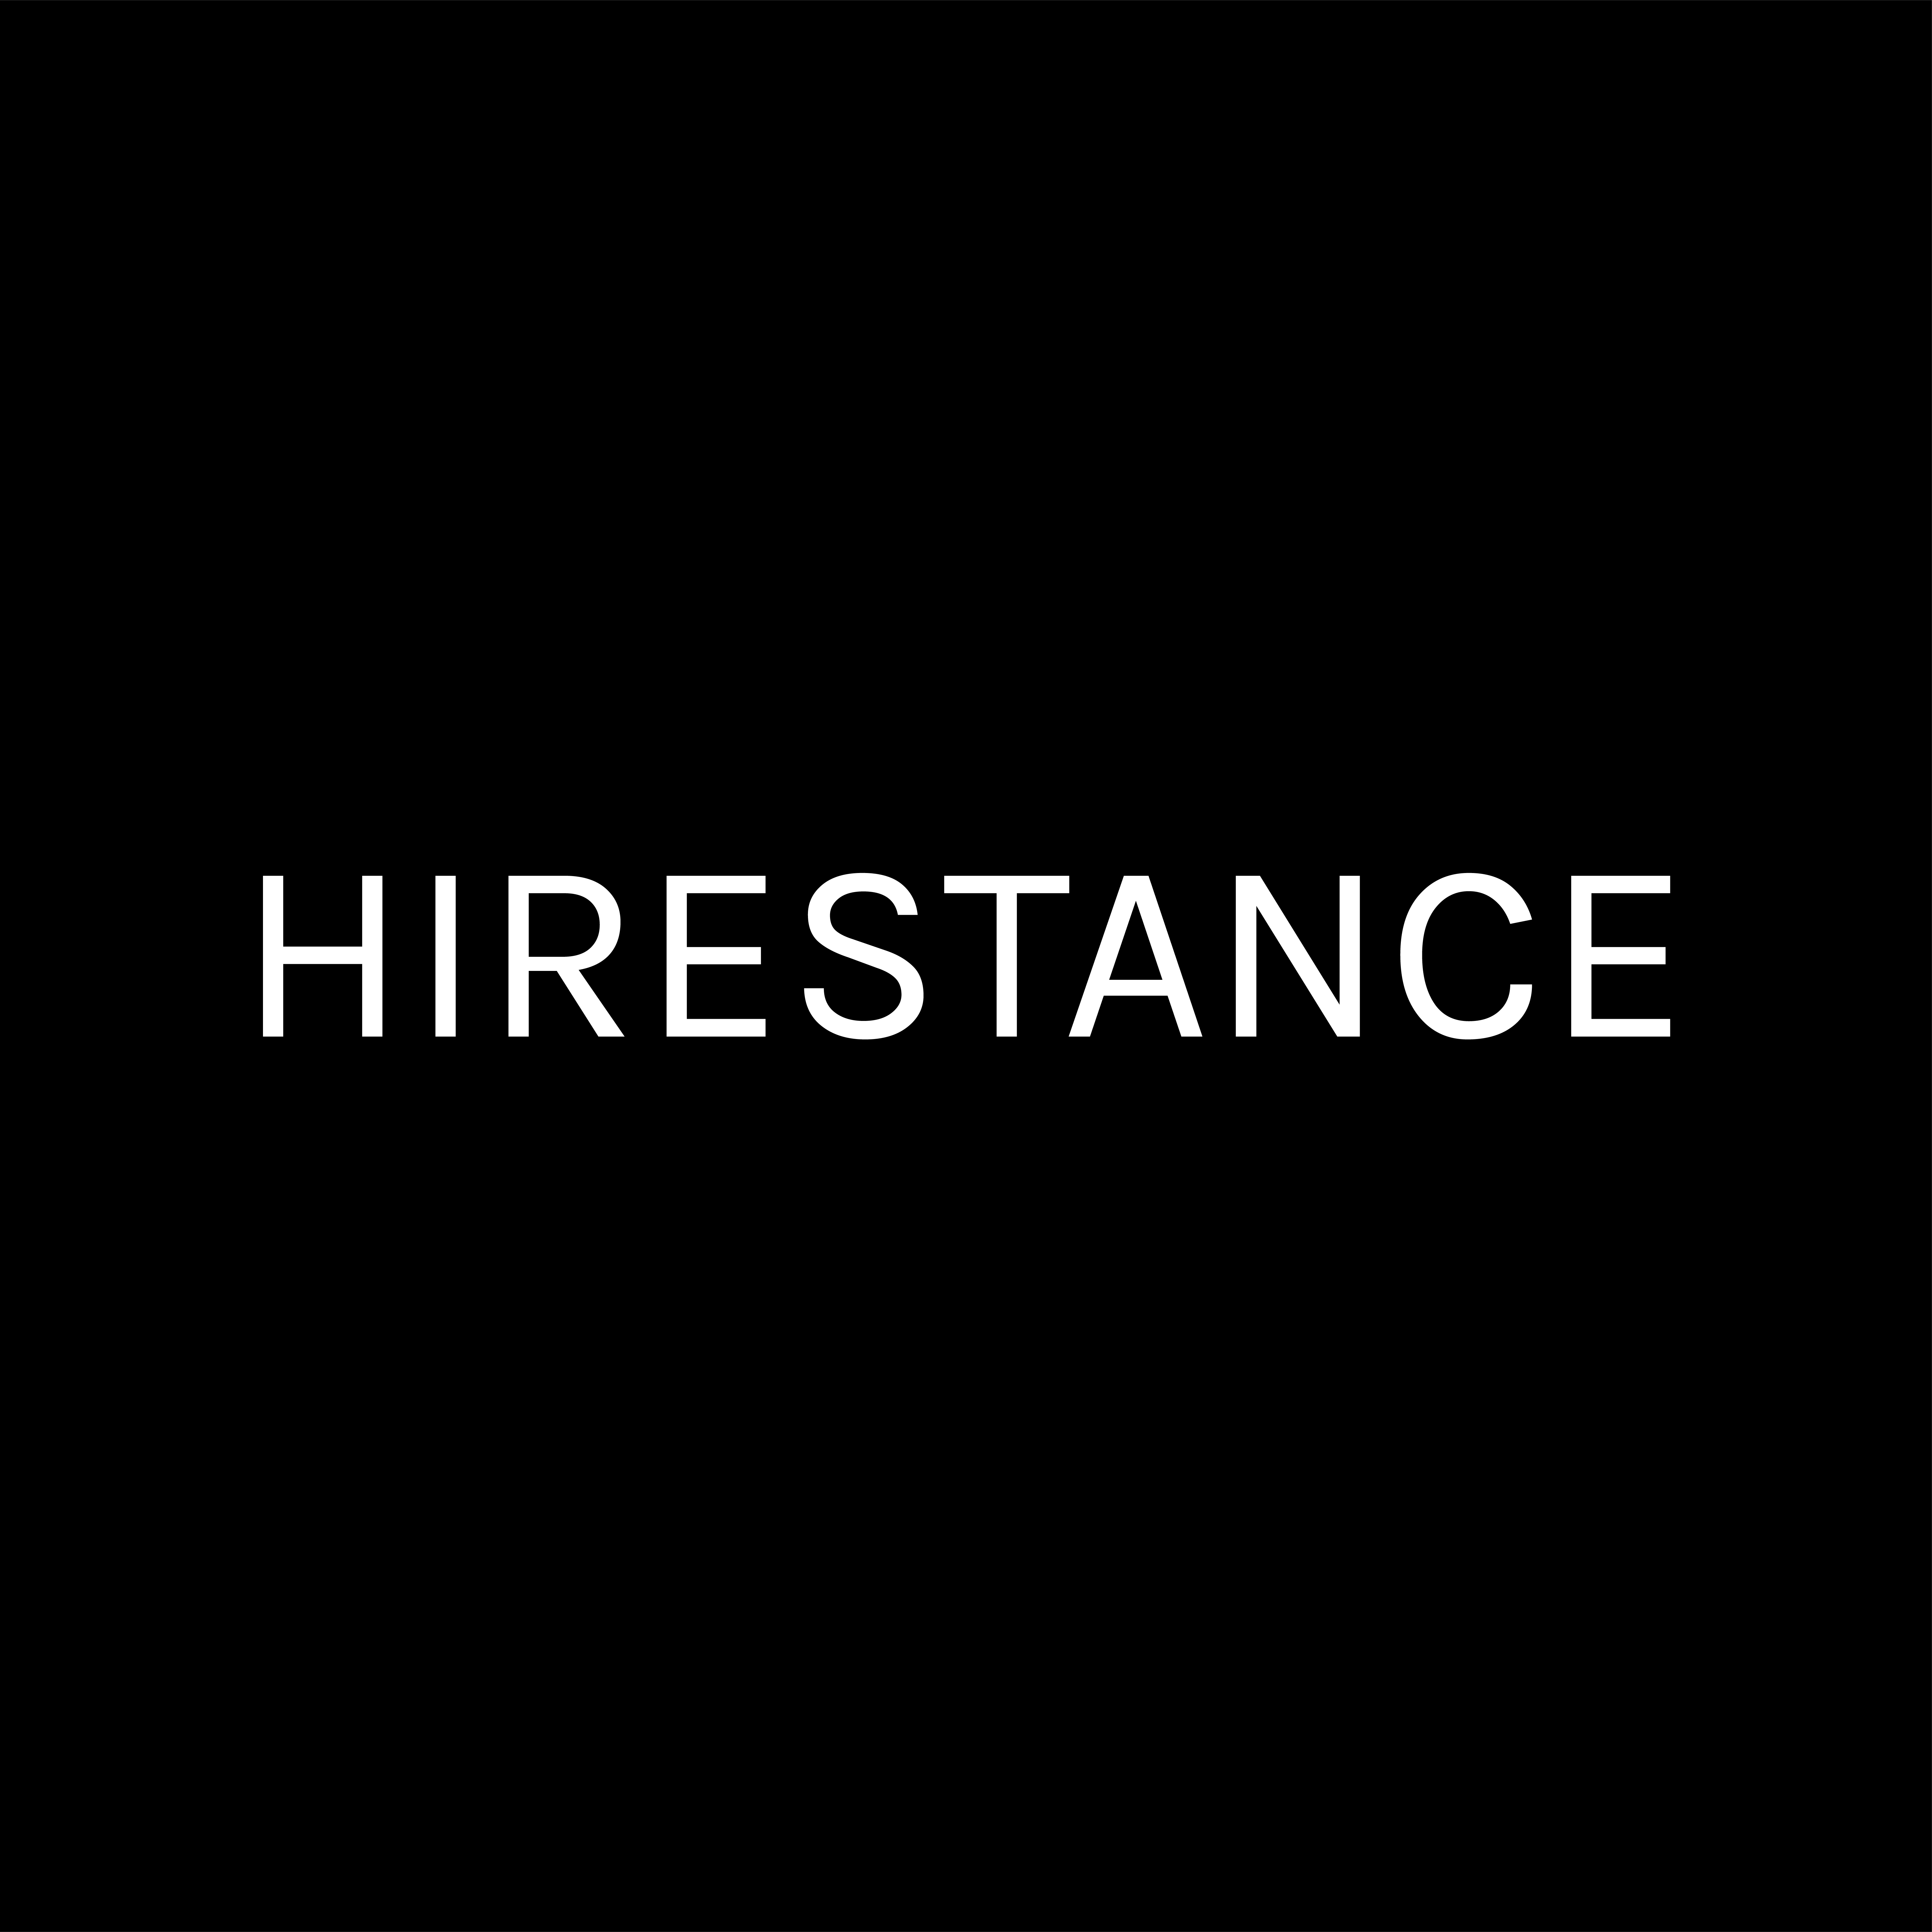 Hirestance logo